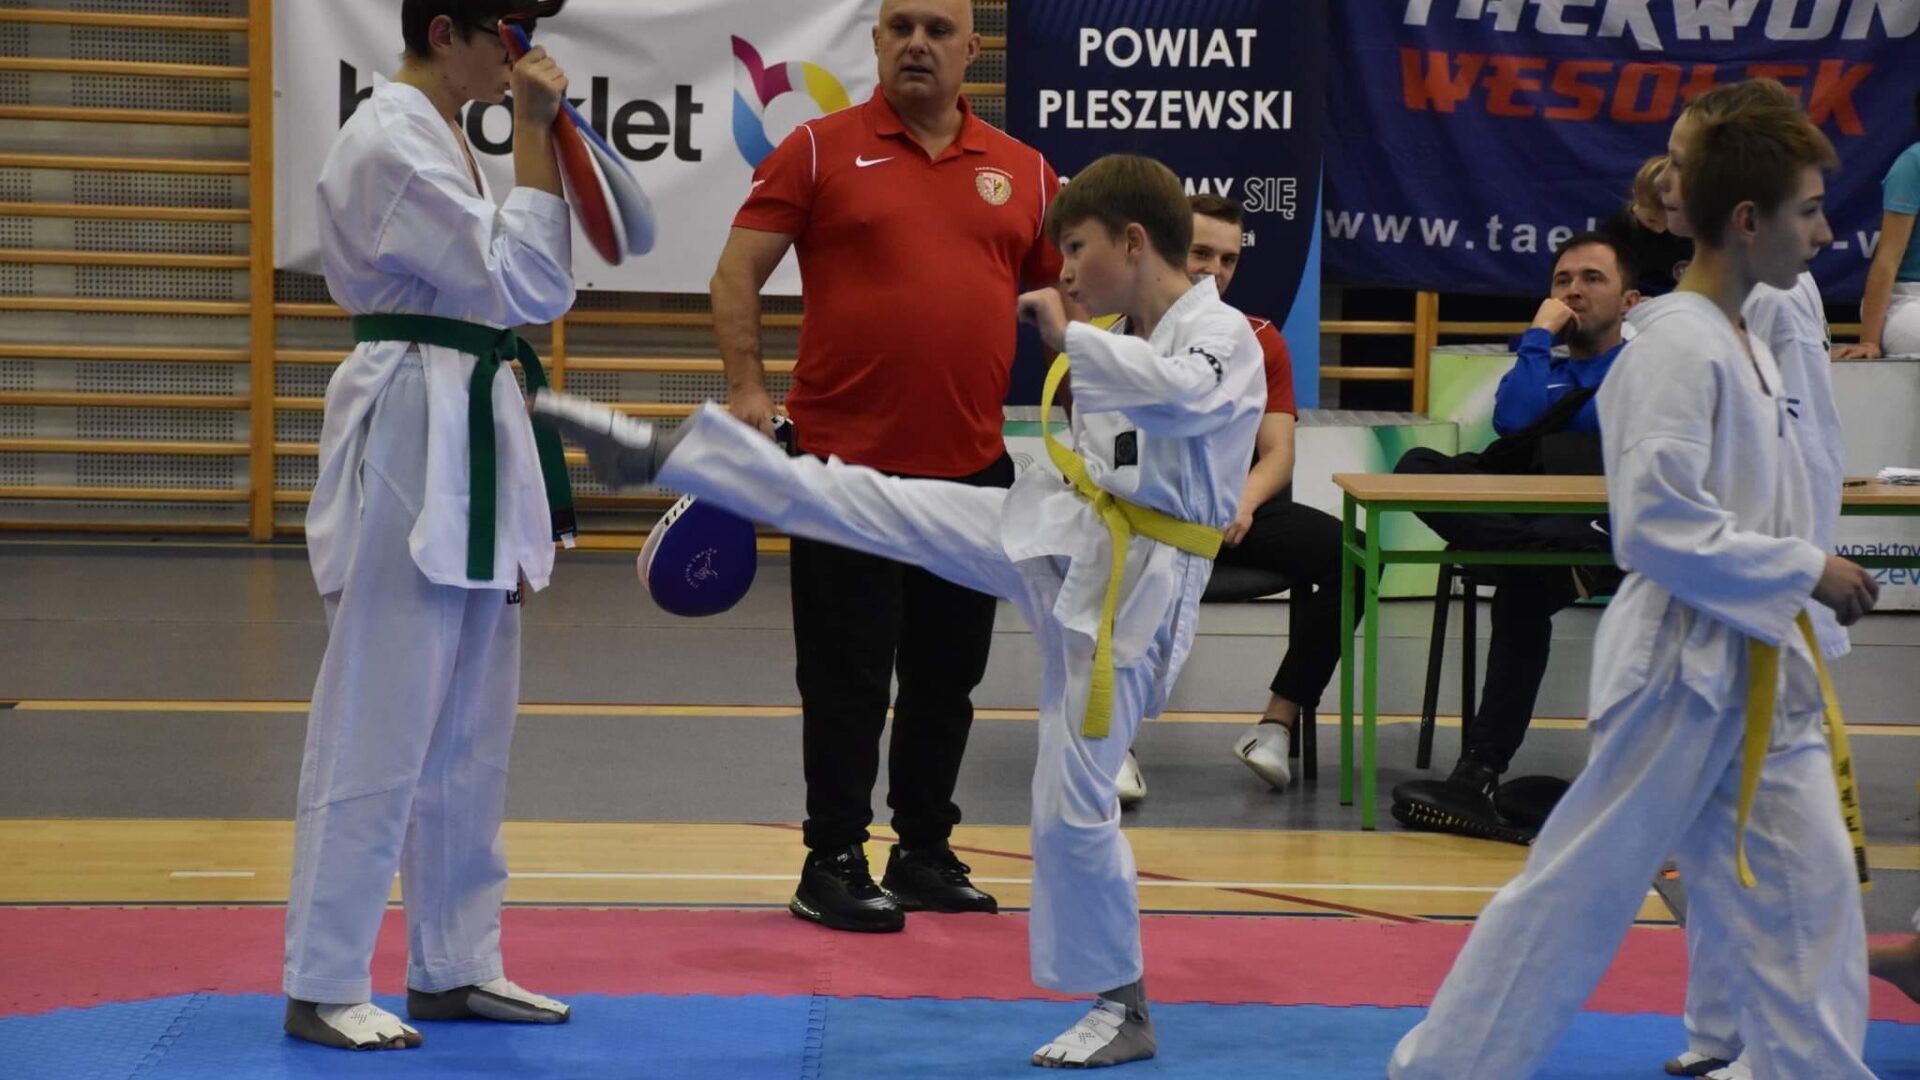 rywalizacja w ramach turnieju taekwondo Wesołek Cup odbywającego się w pleszewskiej Hali Widowiskowo-Sportowej